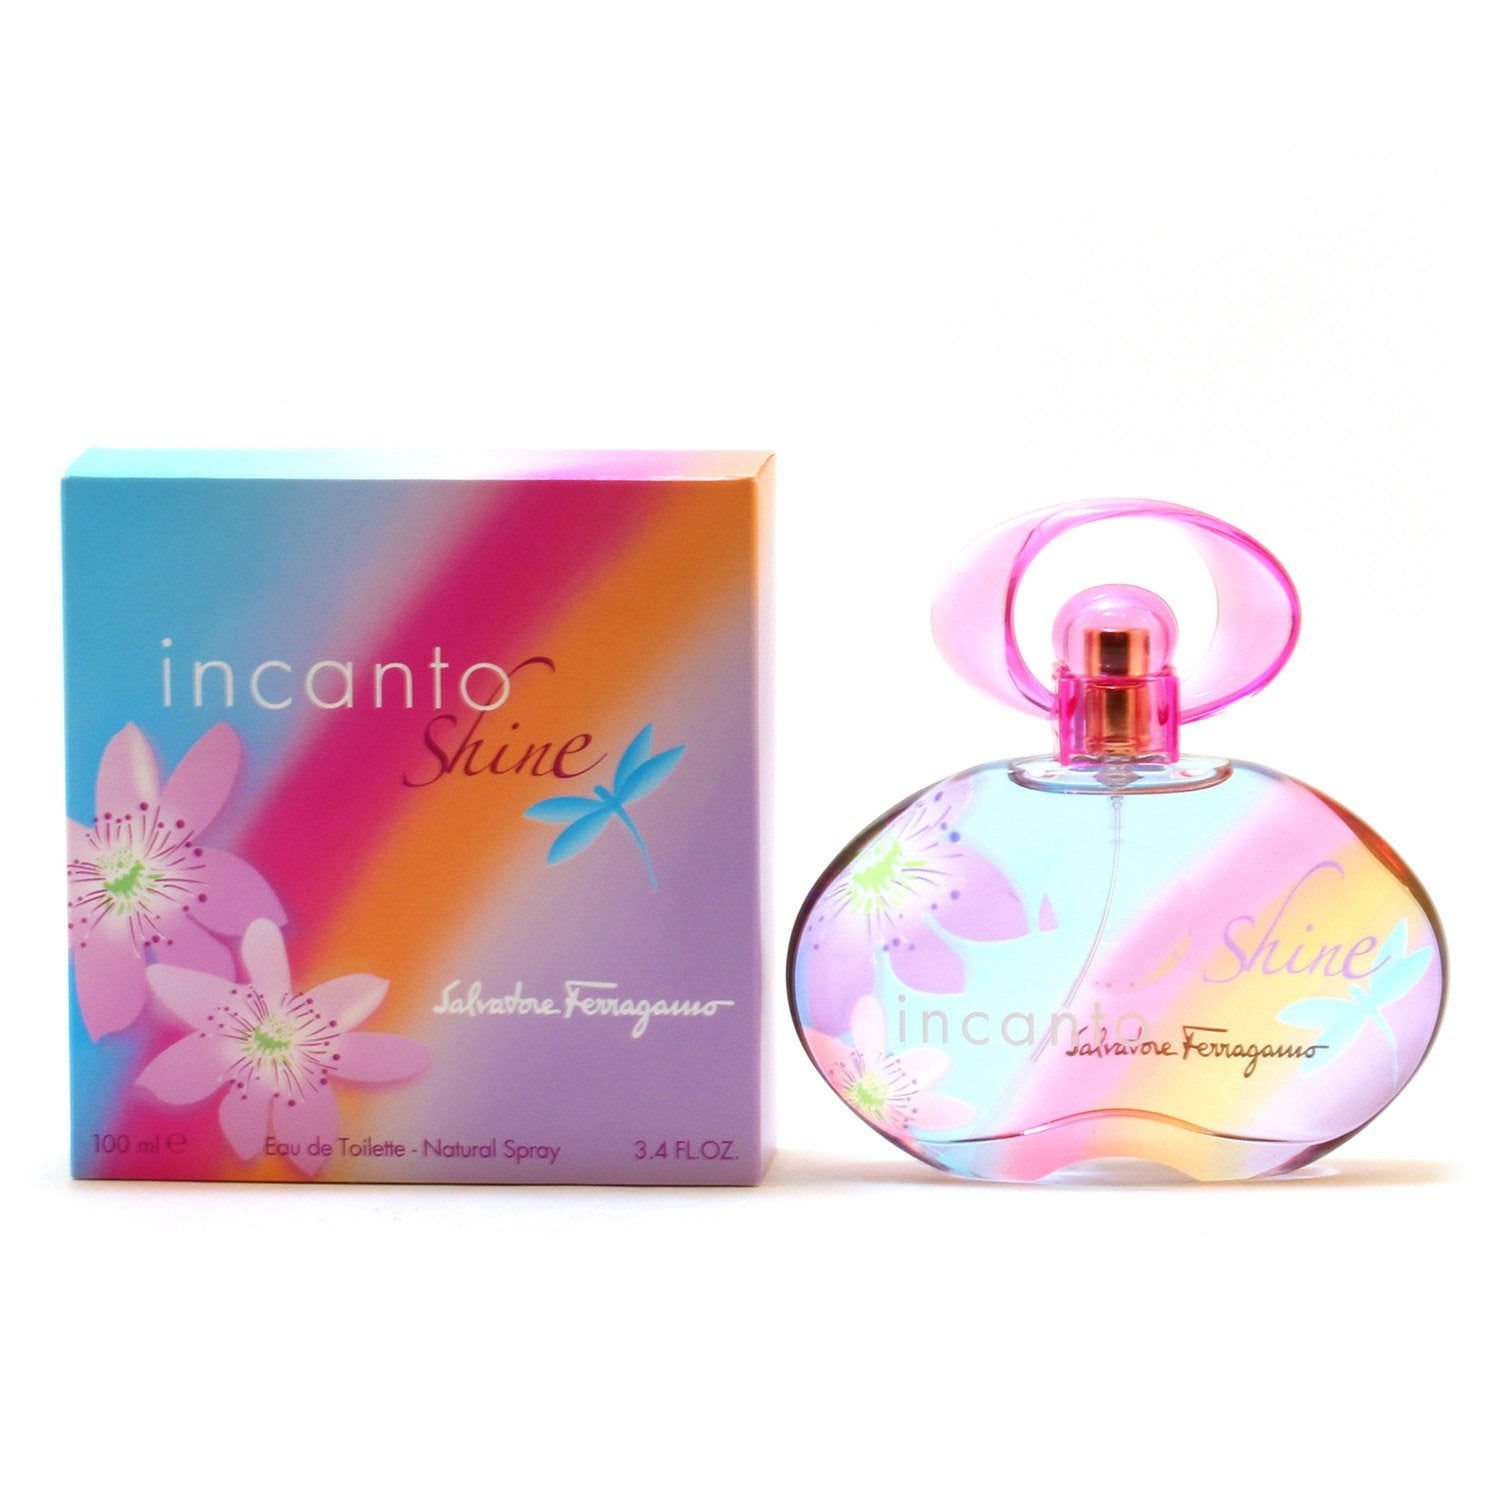 Perfume - INCANTO SHINE FOR WOMEN BY SALVATORE FERRAGAMO - EAU DE TOILETTE SPRAY